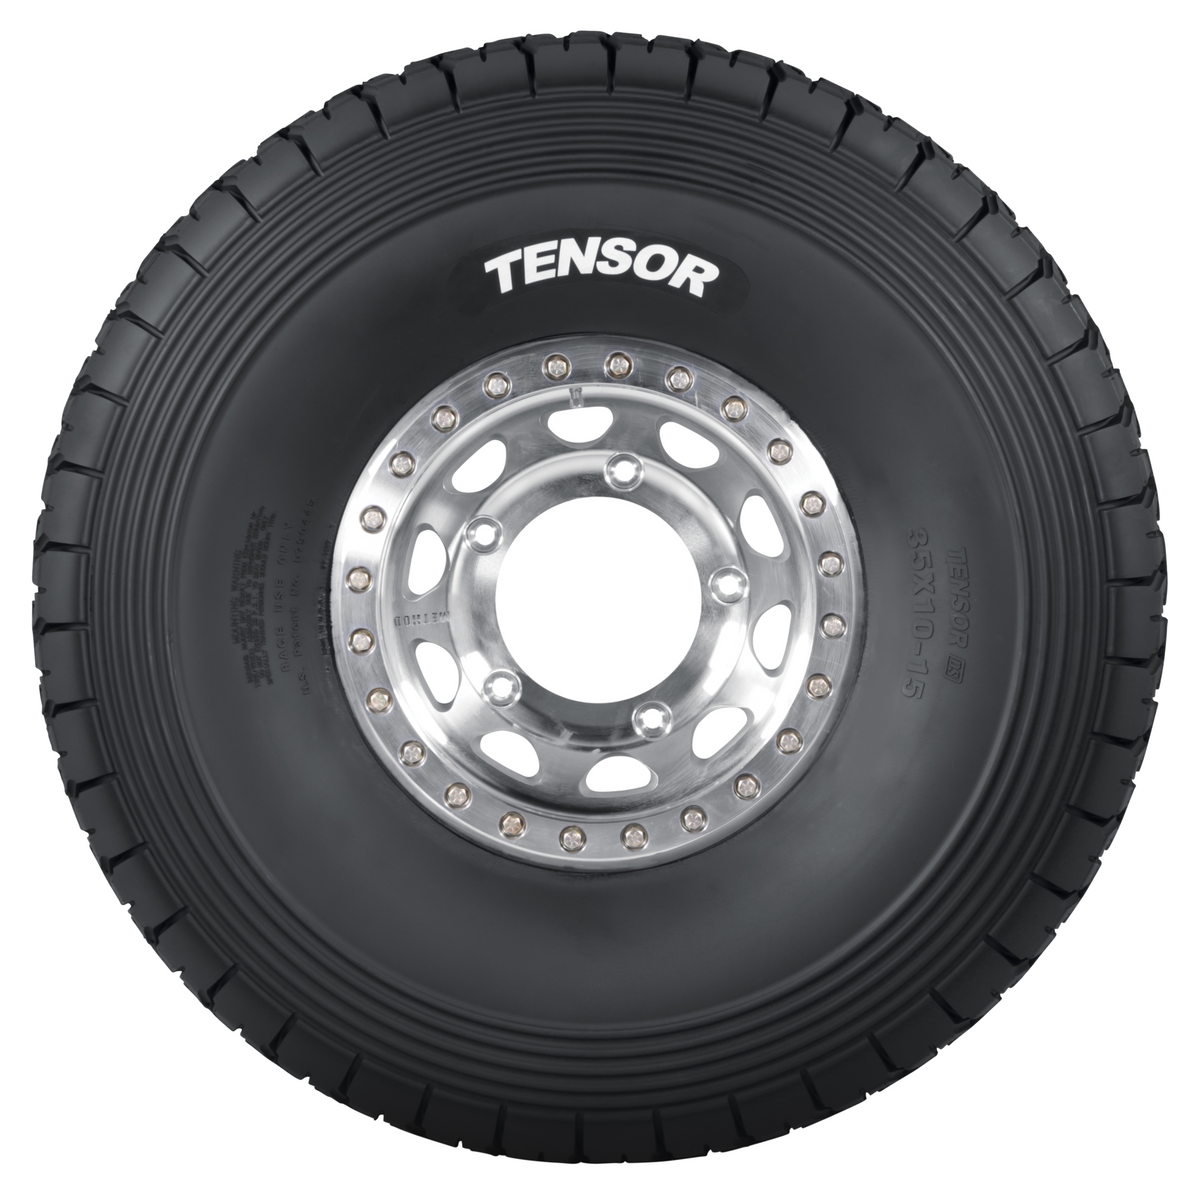 Tensor DSR “Desert Series Race" Tire